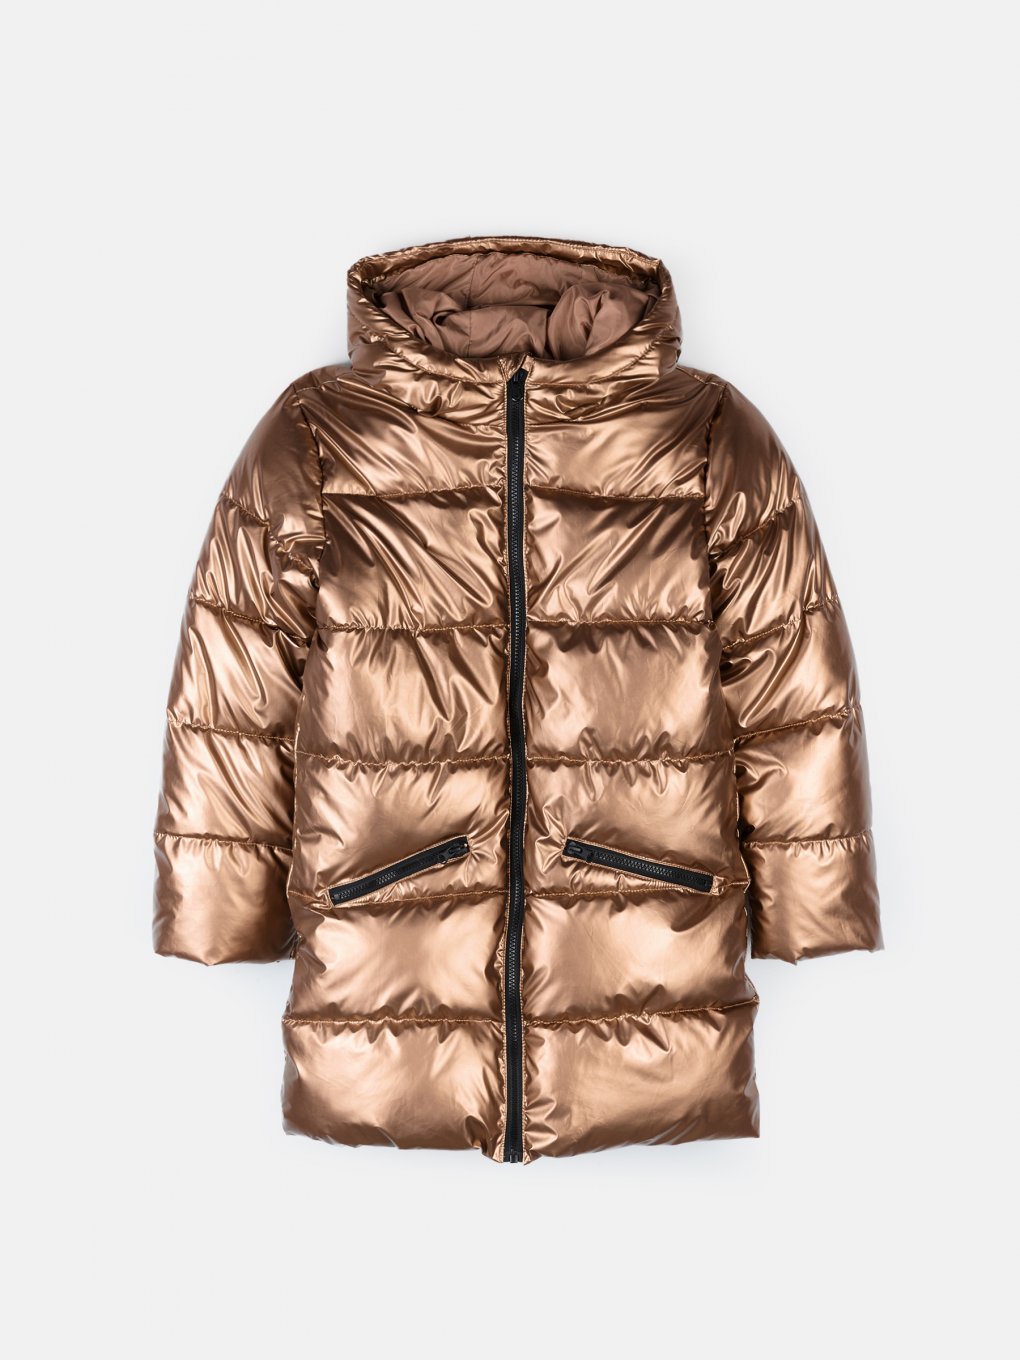 Quilted metallic winter jacket